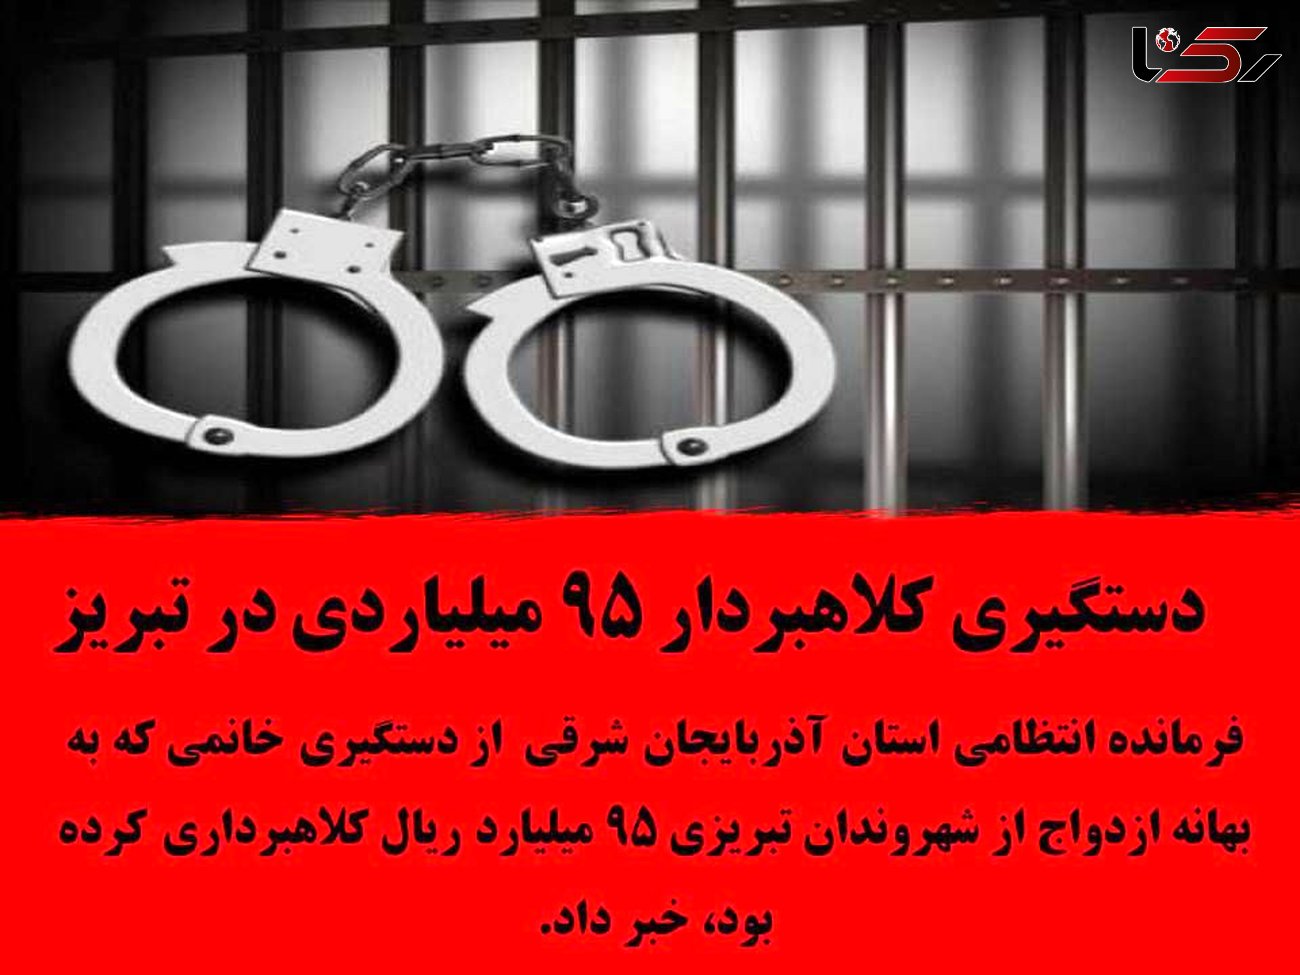 دستگیری کلاهبردار 95 میلیاردی در تبریز